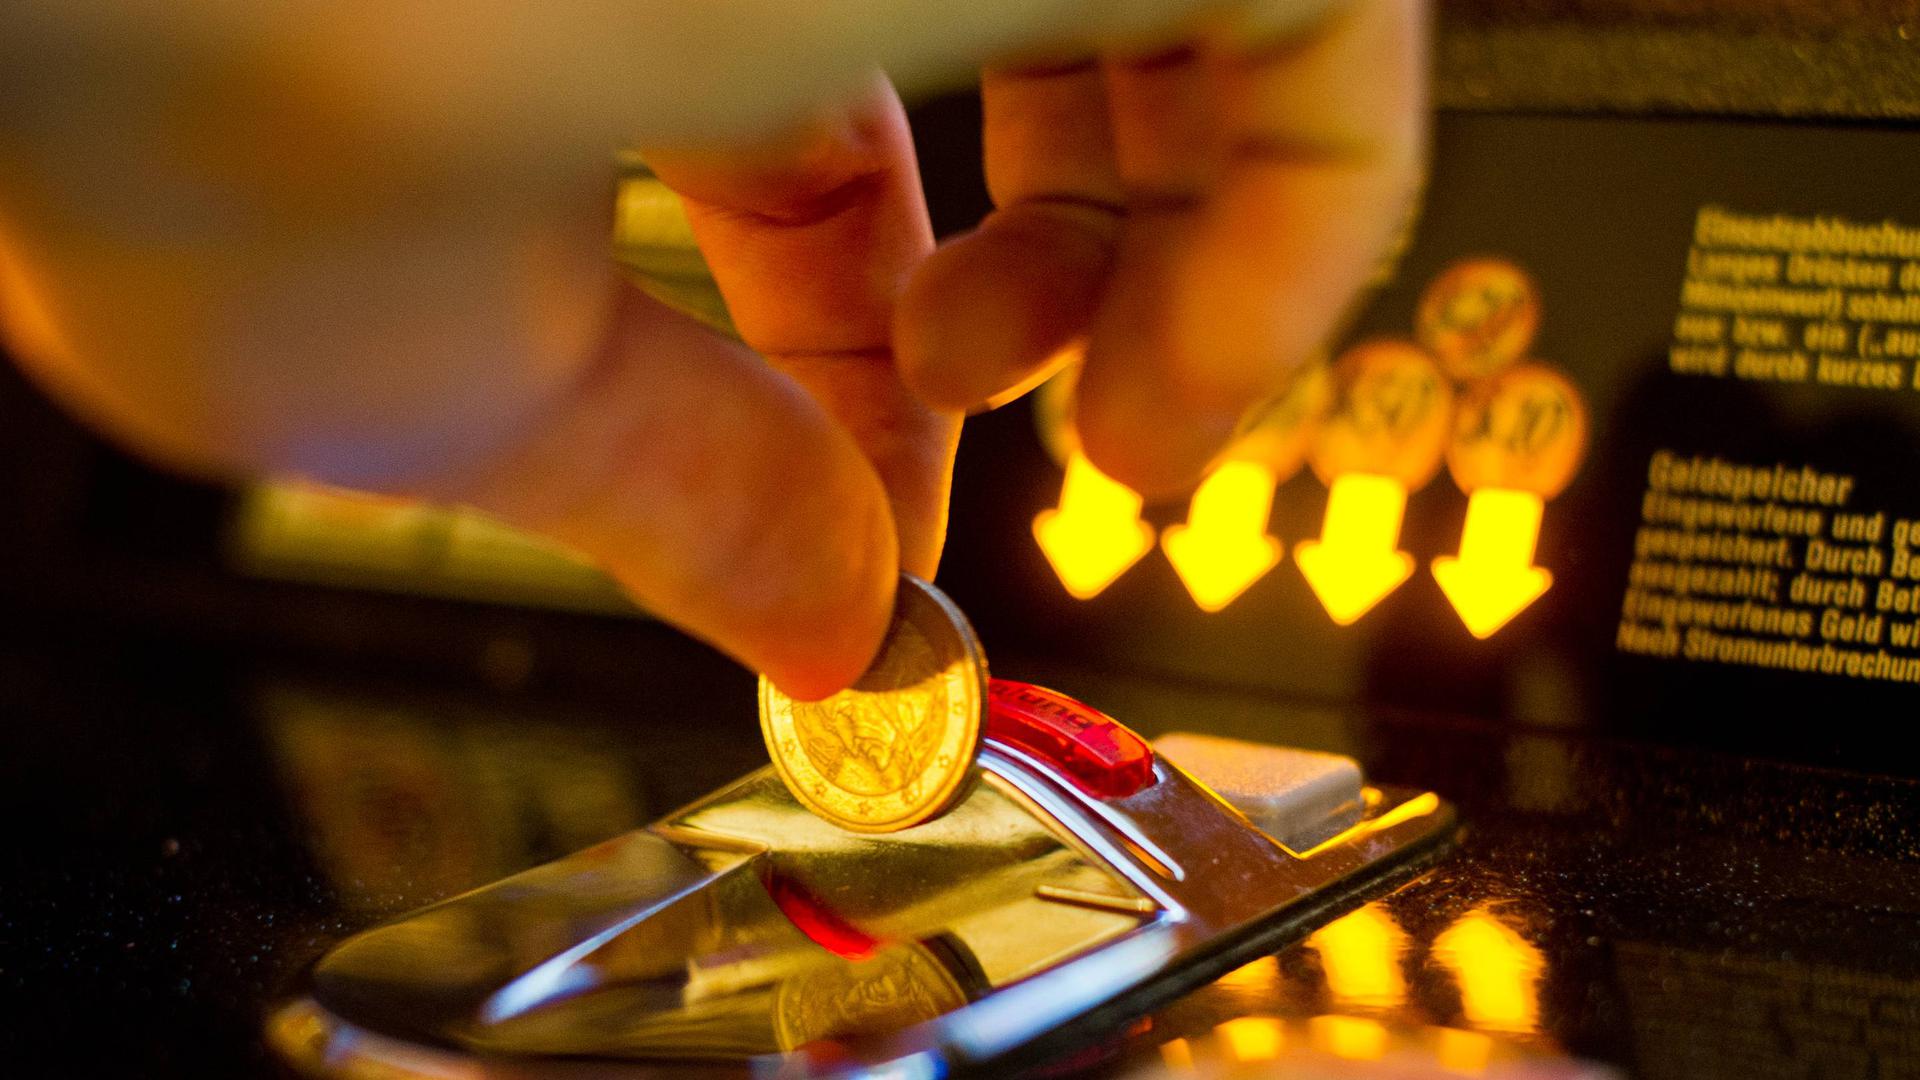 ARCHIV - Eine Hand wirft eine Geldmünze in einen Spielautomaten (Aufnahme vom 04.09.2014).    (zu dpa vom 23.08.2017: Er liebt das Spiel, das Theater und «Game of Thrones») Foto: Ole Spata/dpa +++(c) dpa - Bildfunk+++ | Verwendung weltweit